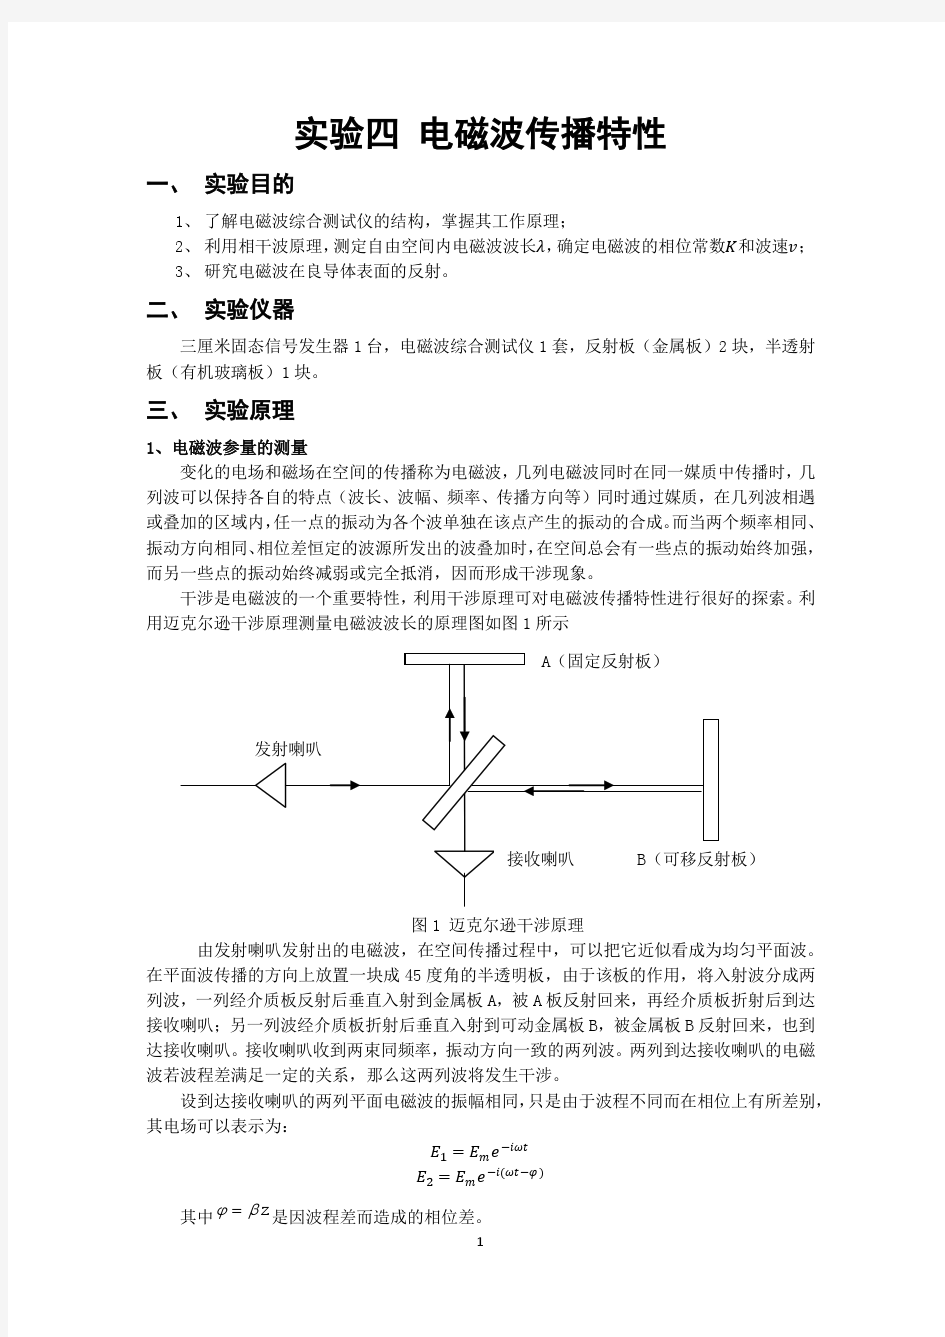 电磁波传播特性-南京大学